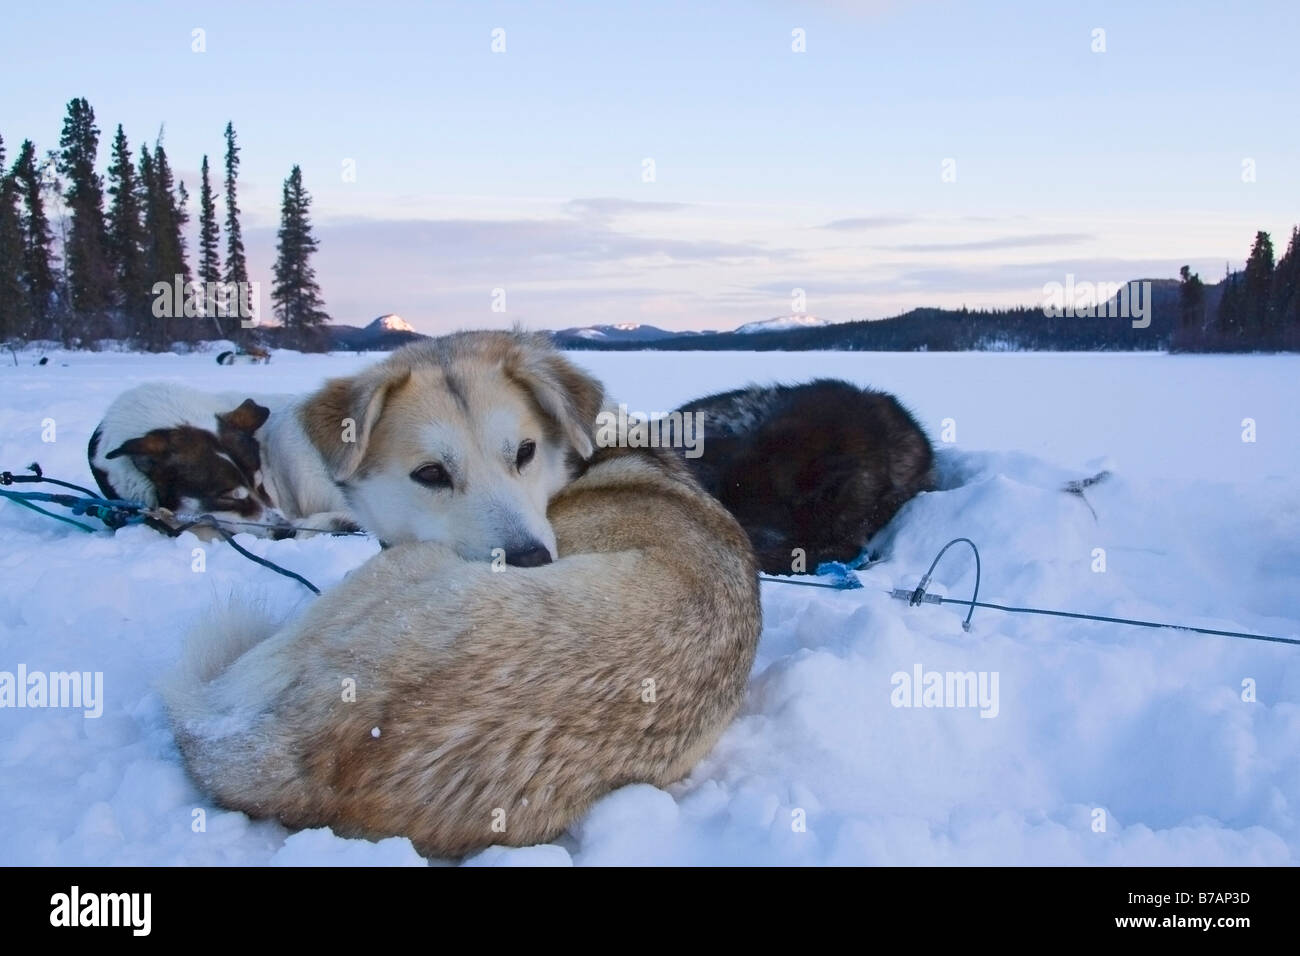 Raggomitolati slitte trainate da cani, cani da slitta in appoggio sulla neve, dawn, Yukon Territory, Canada, America del Nord Foto Stock